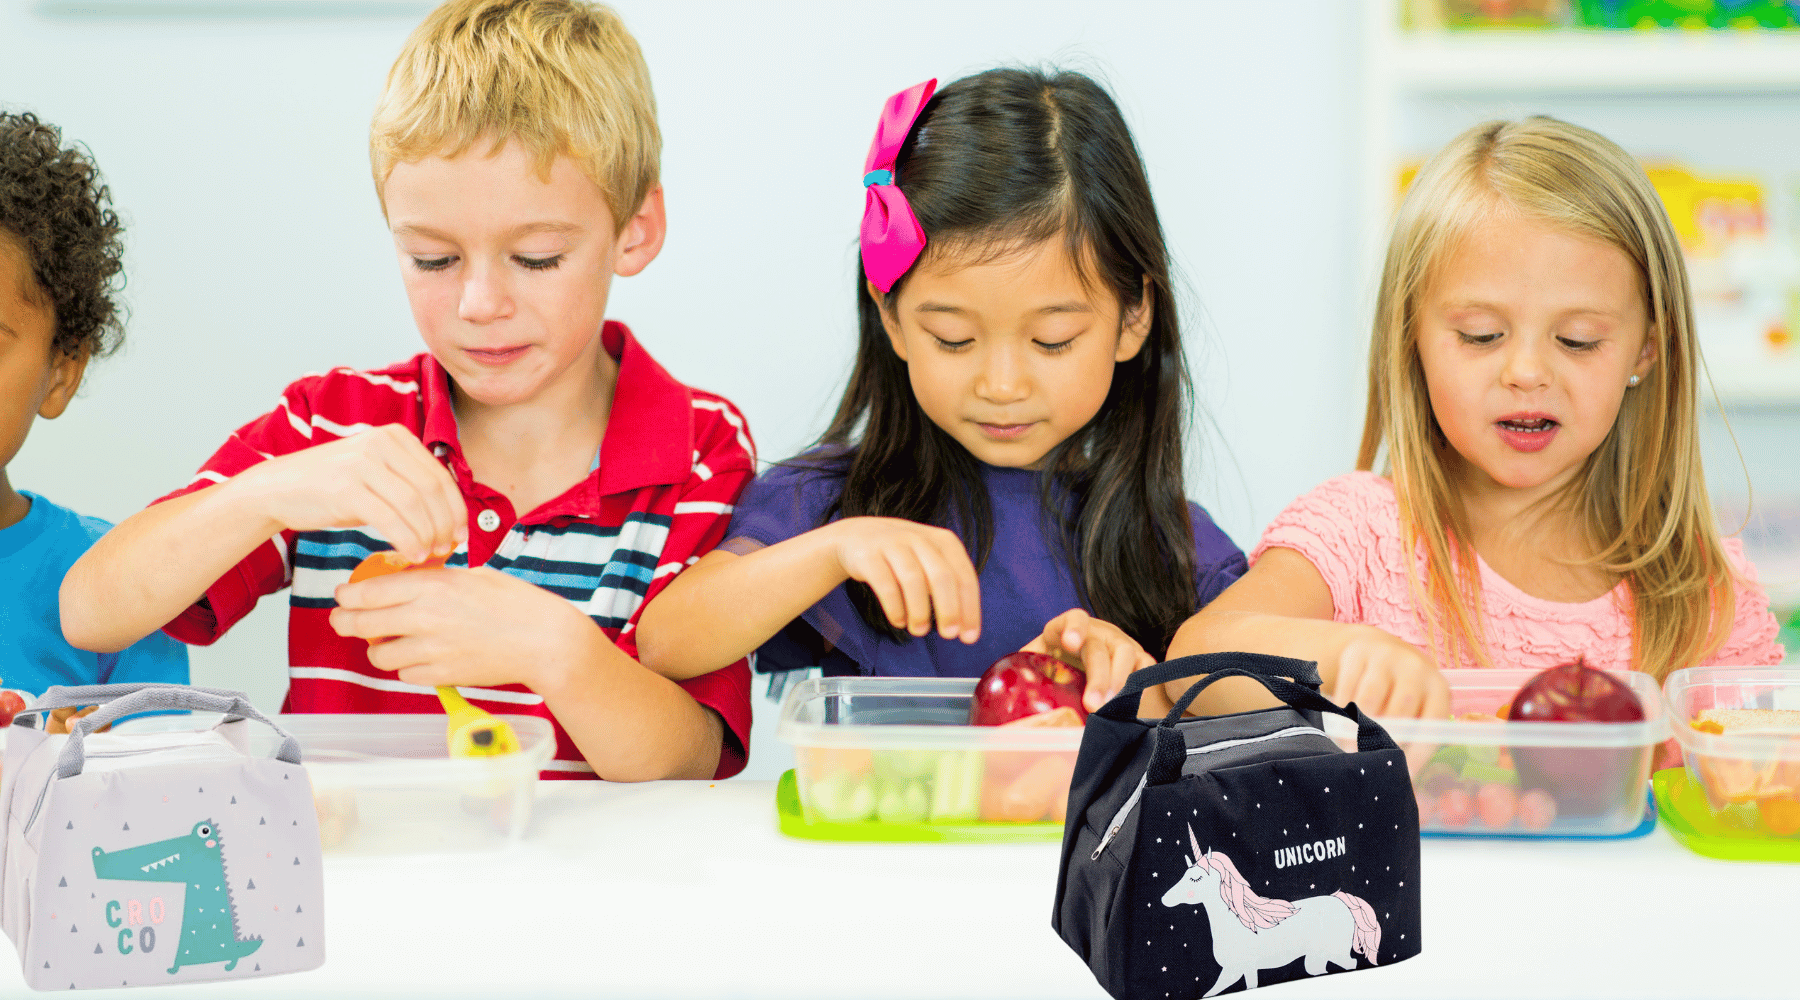 Les sacs isothermes pour enfants : un moyen pratique et écologique de garder les repas frais